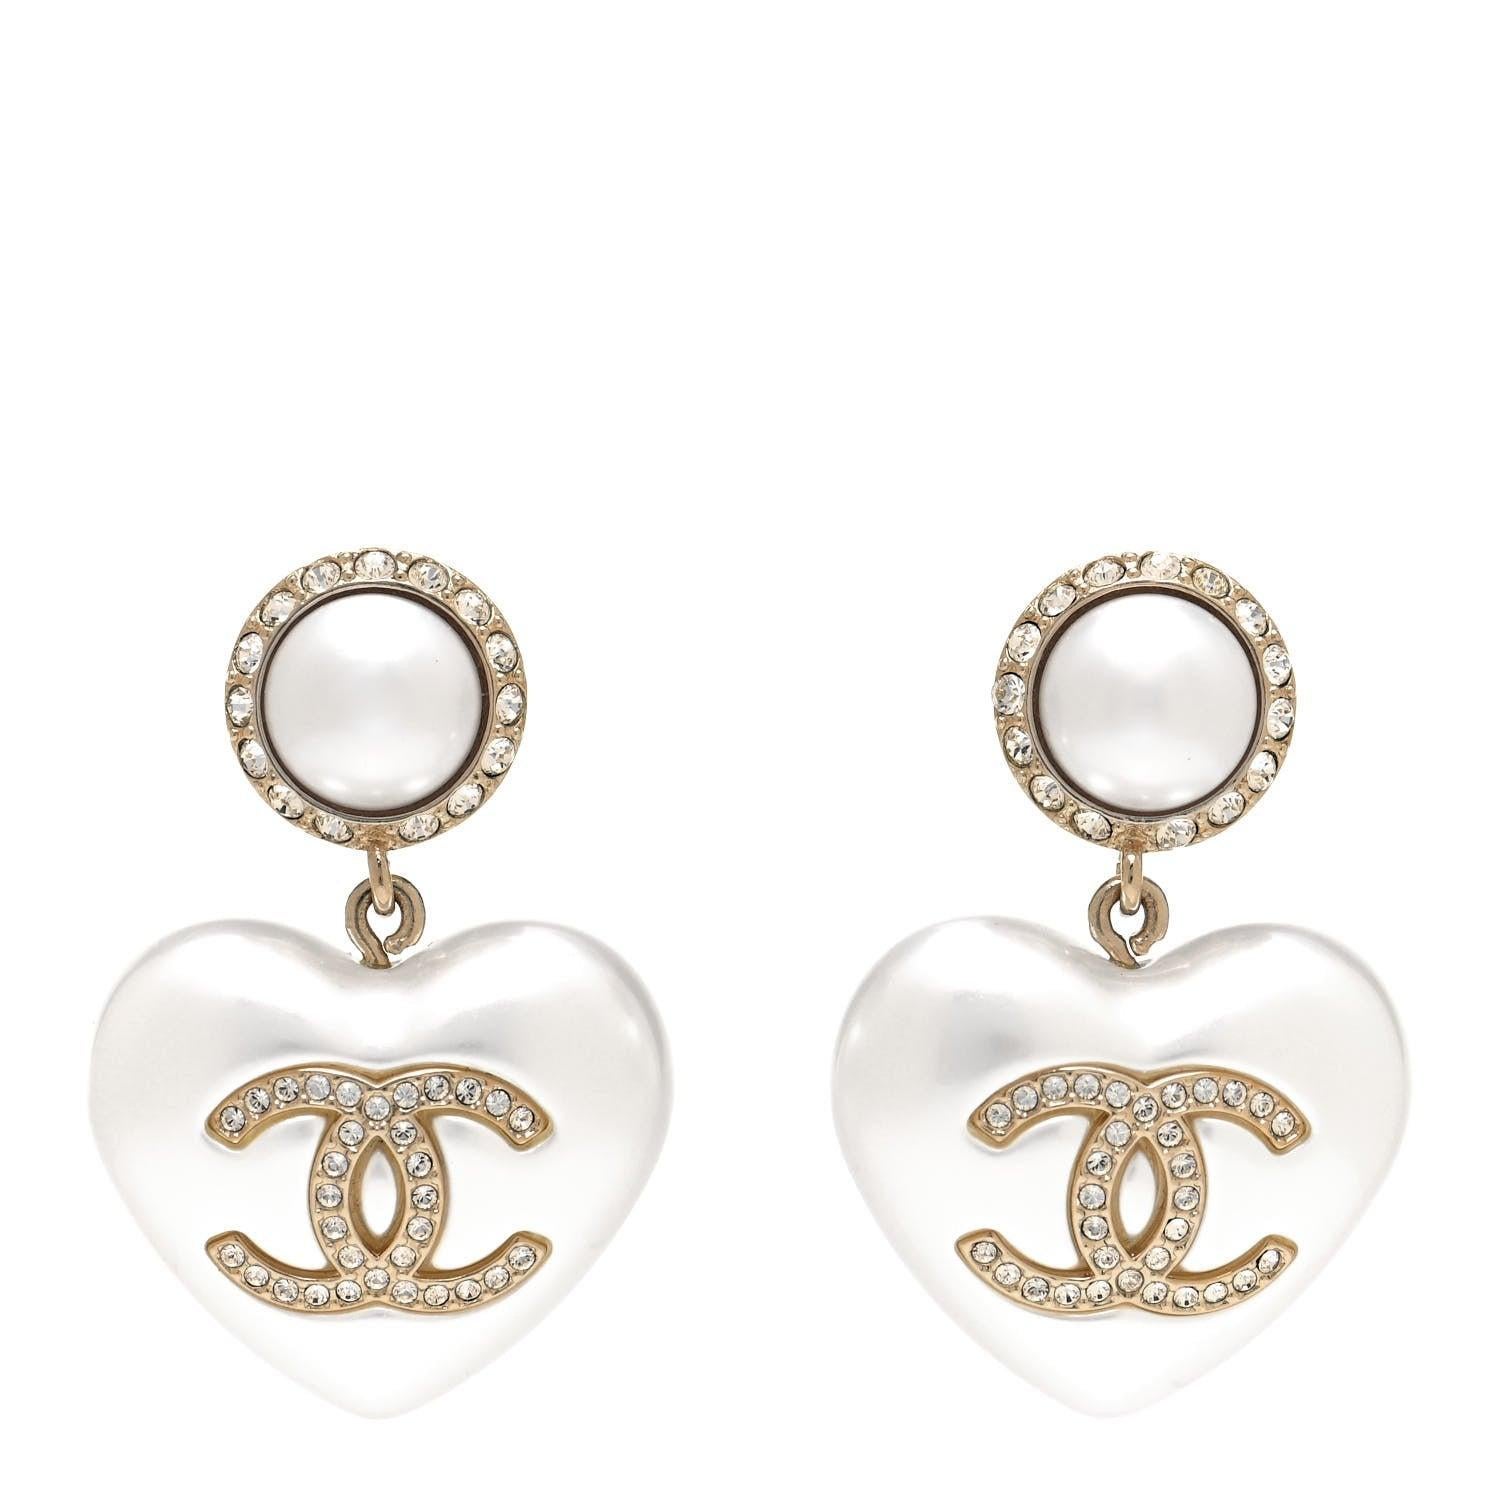 chanel heart earrings